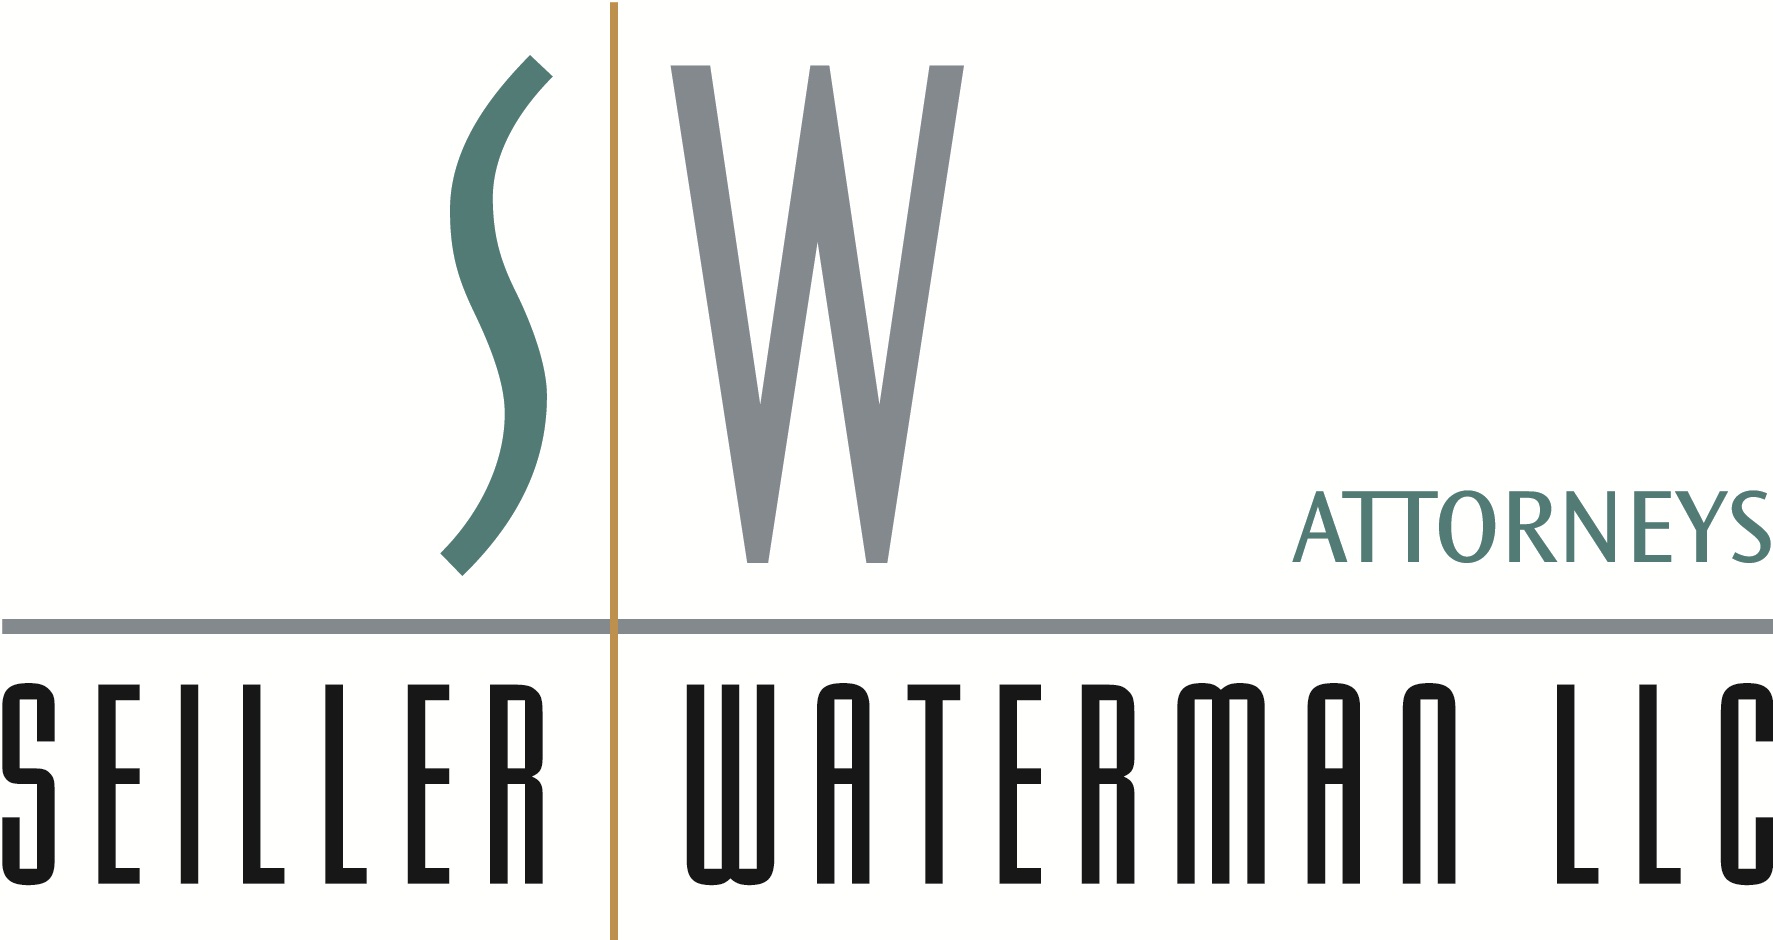 Seiller Waterman LLC logo